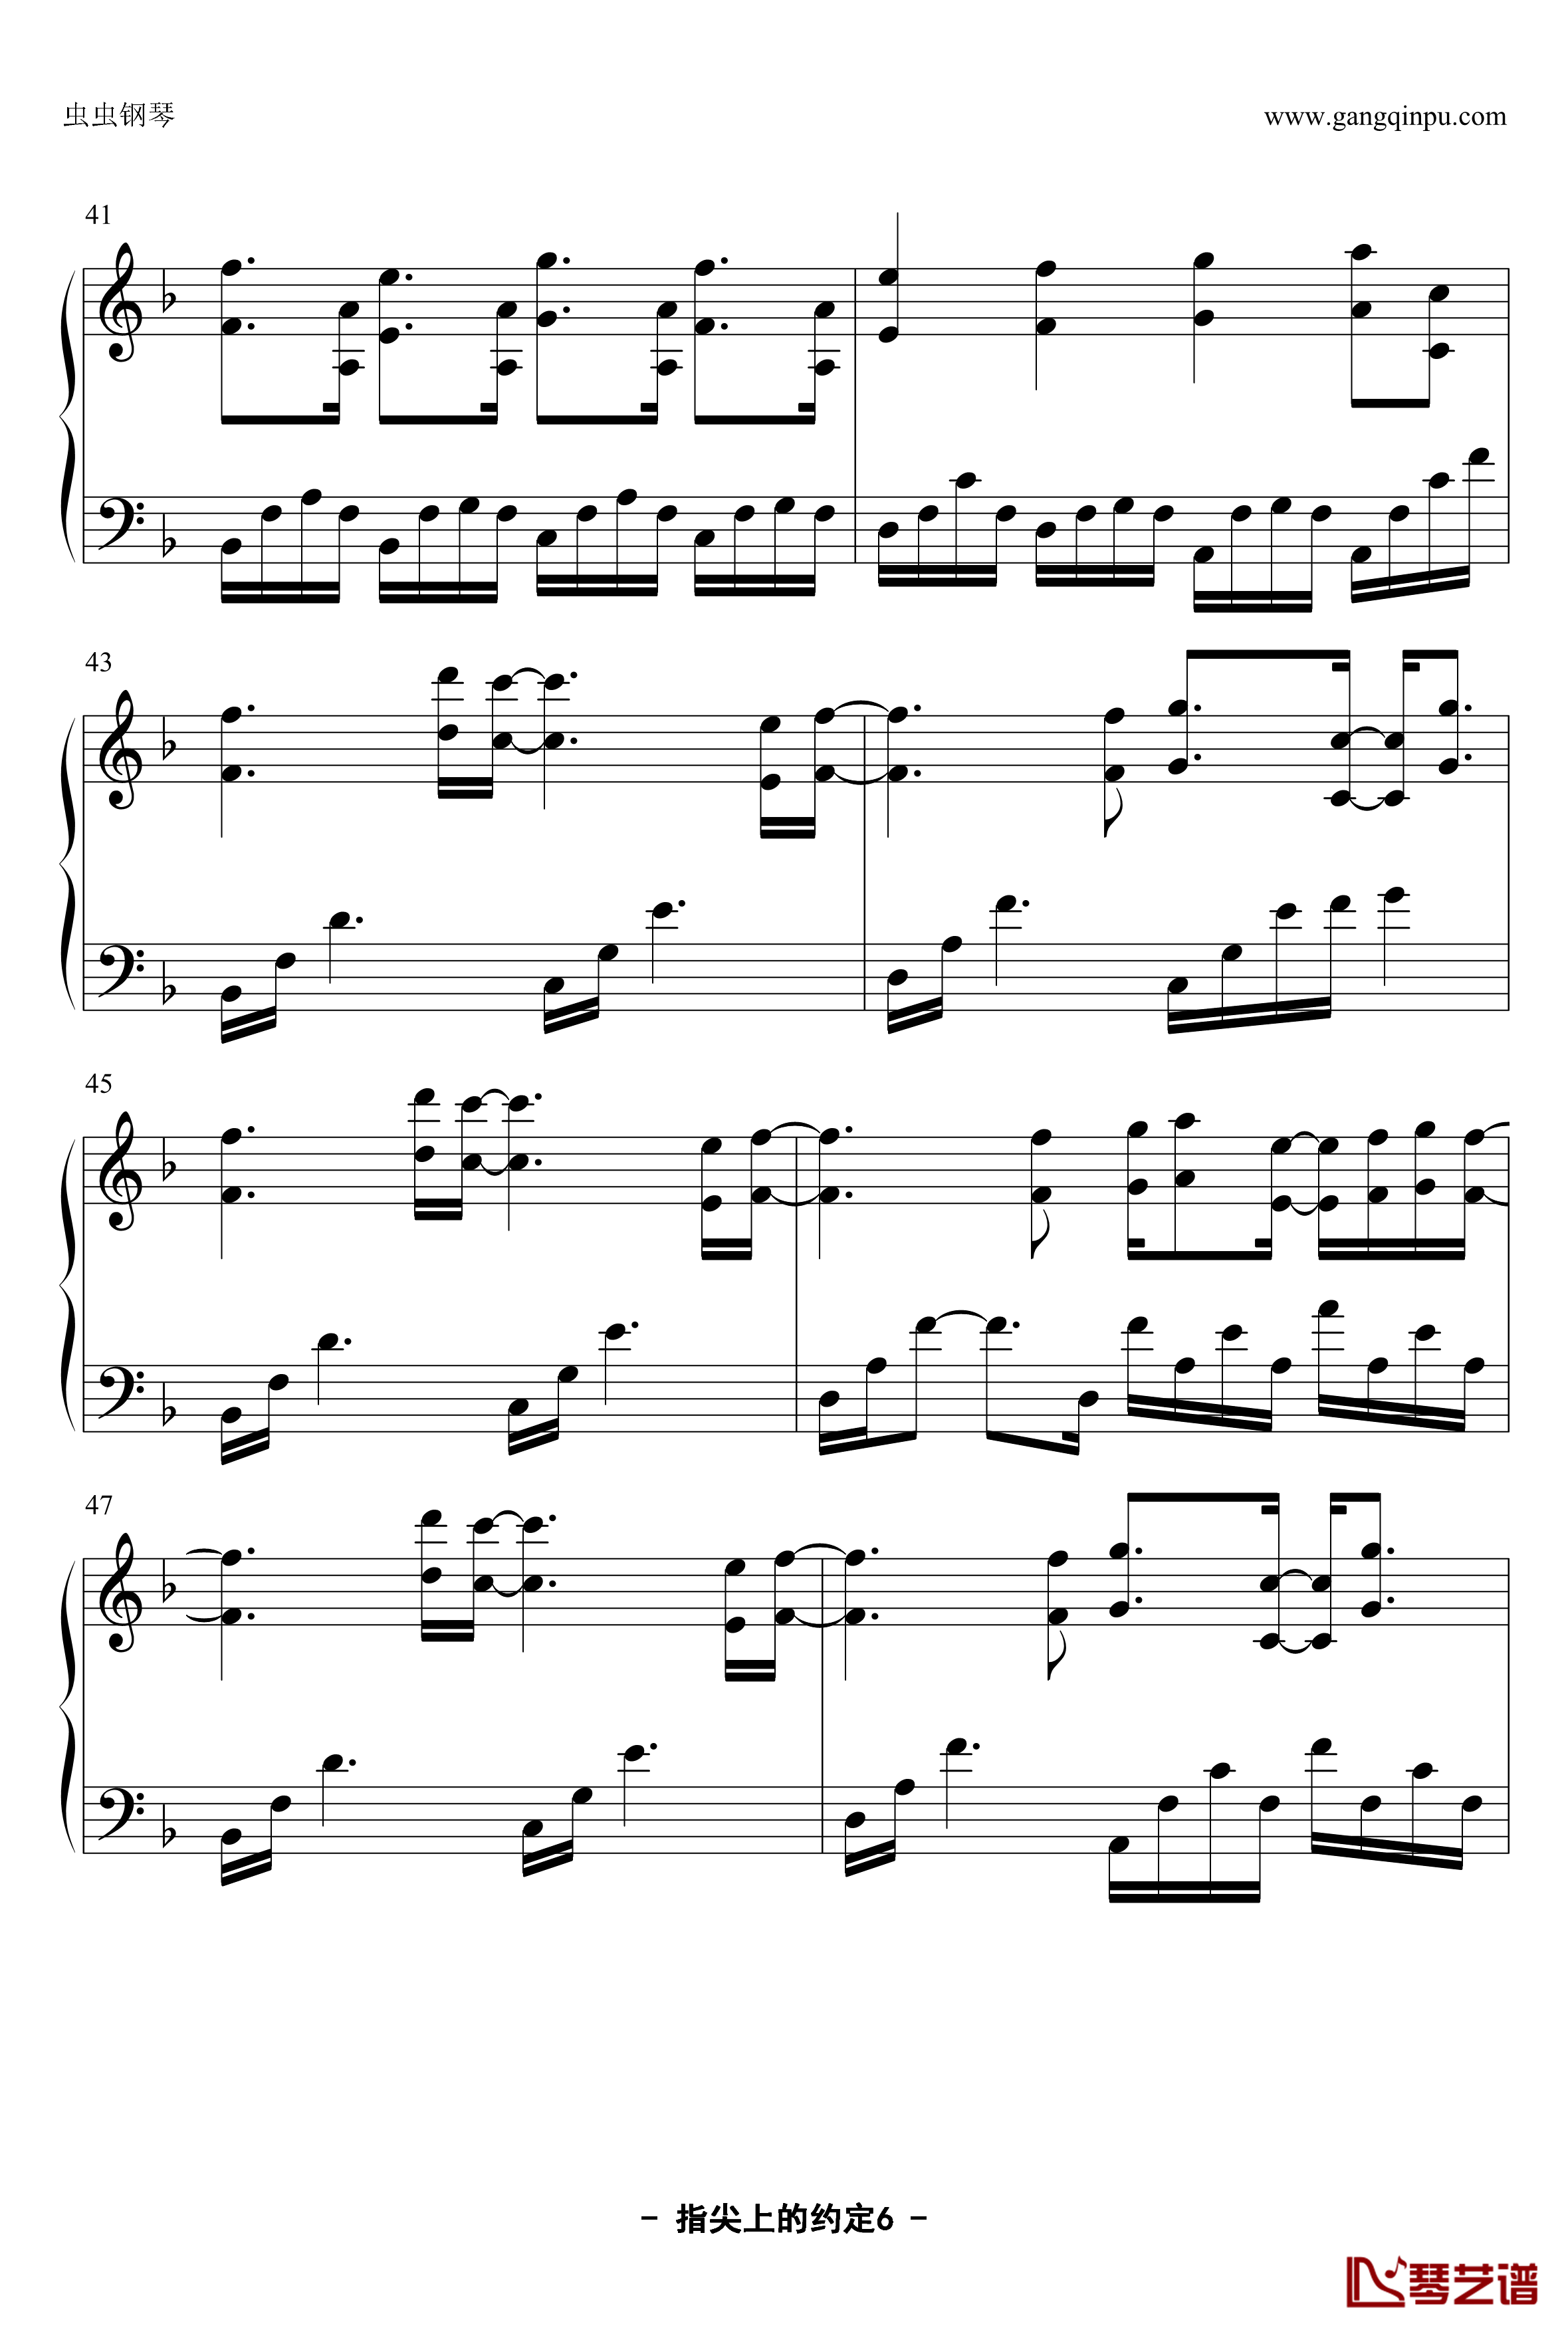 指尖上的约定钢琴谱-YUBIKIRI-GENMAN-Mili6